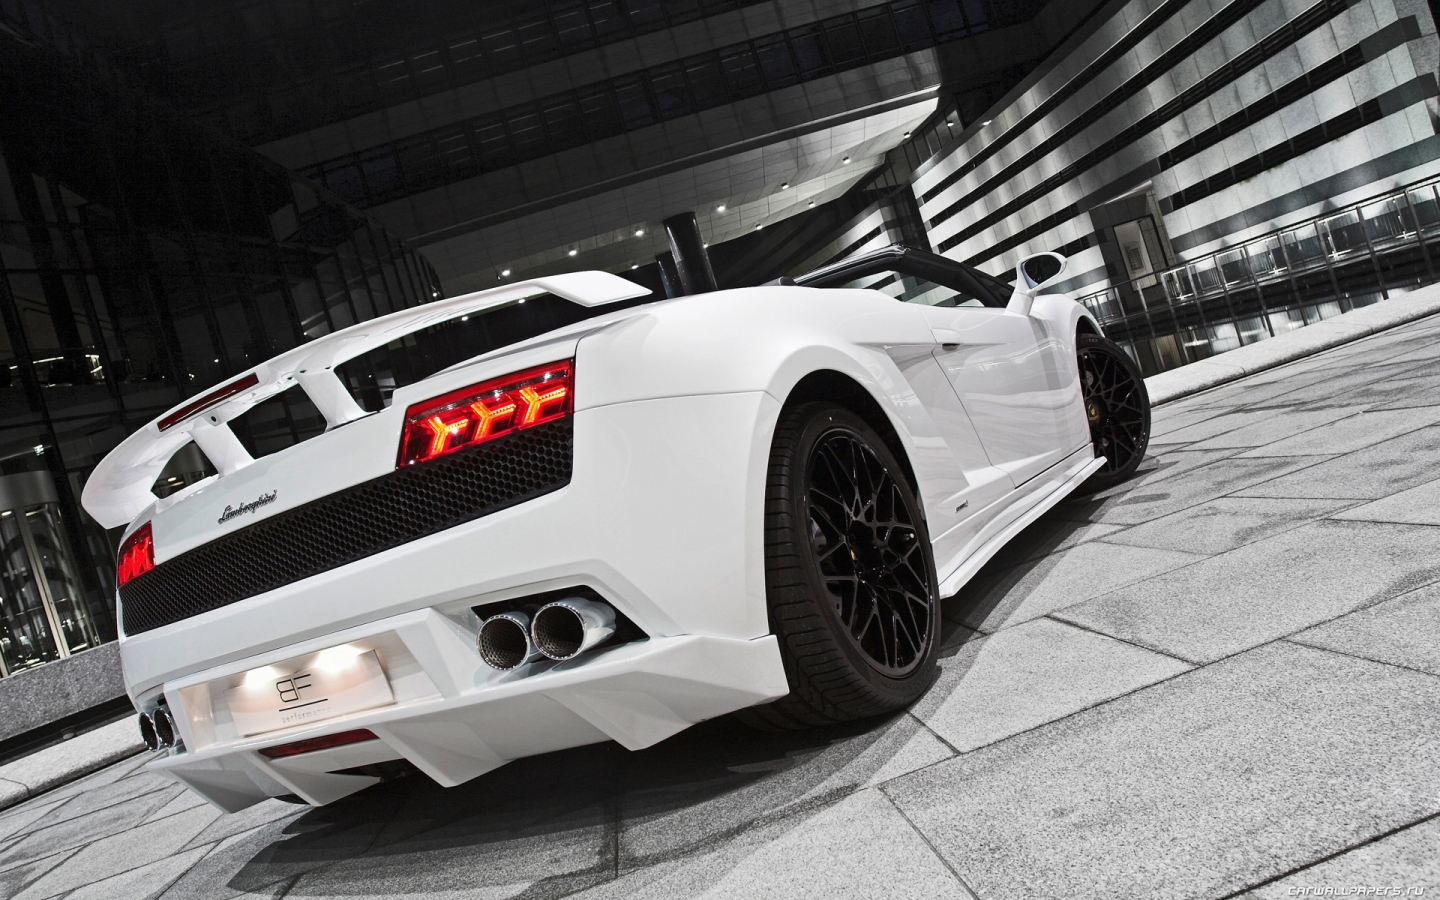 White Lamborghini Coupe for 1440 x 900 widescreen resolution